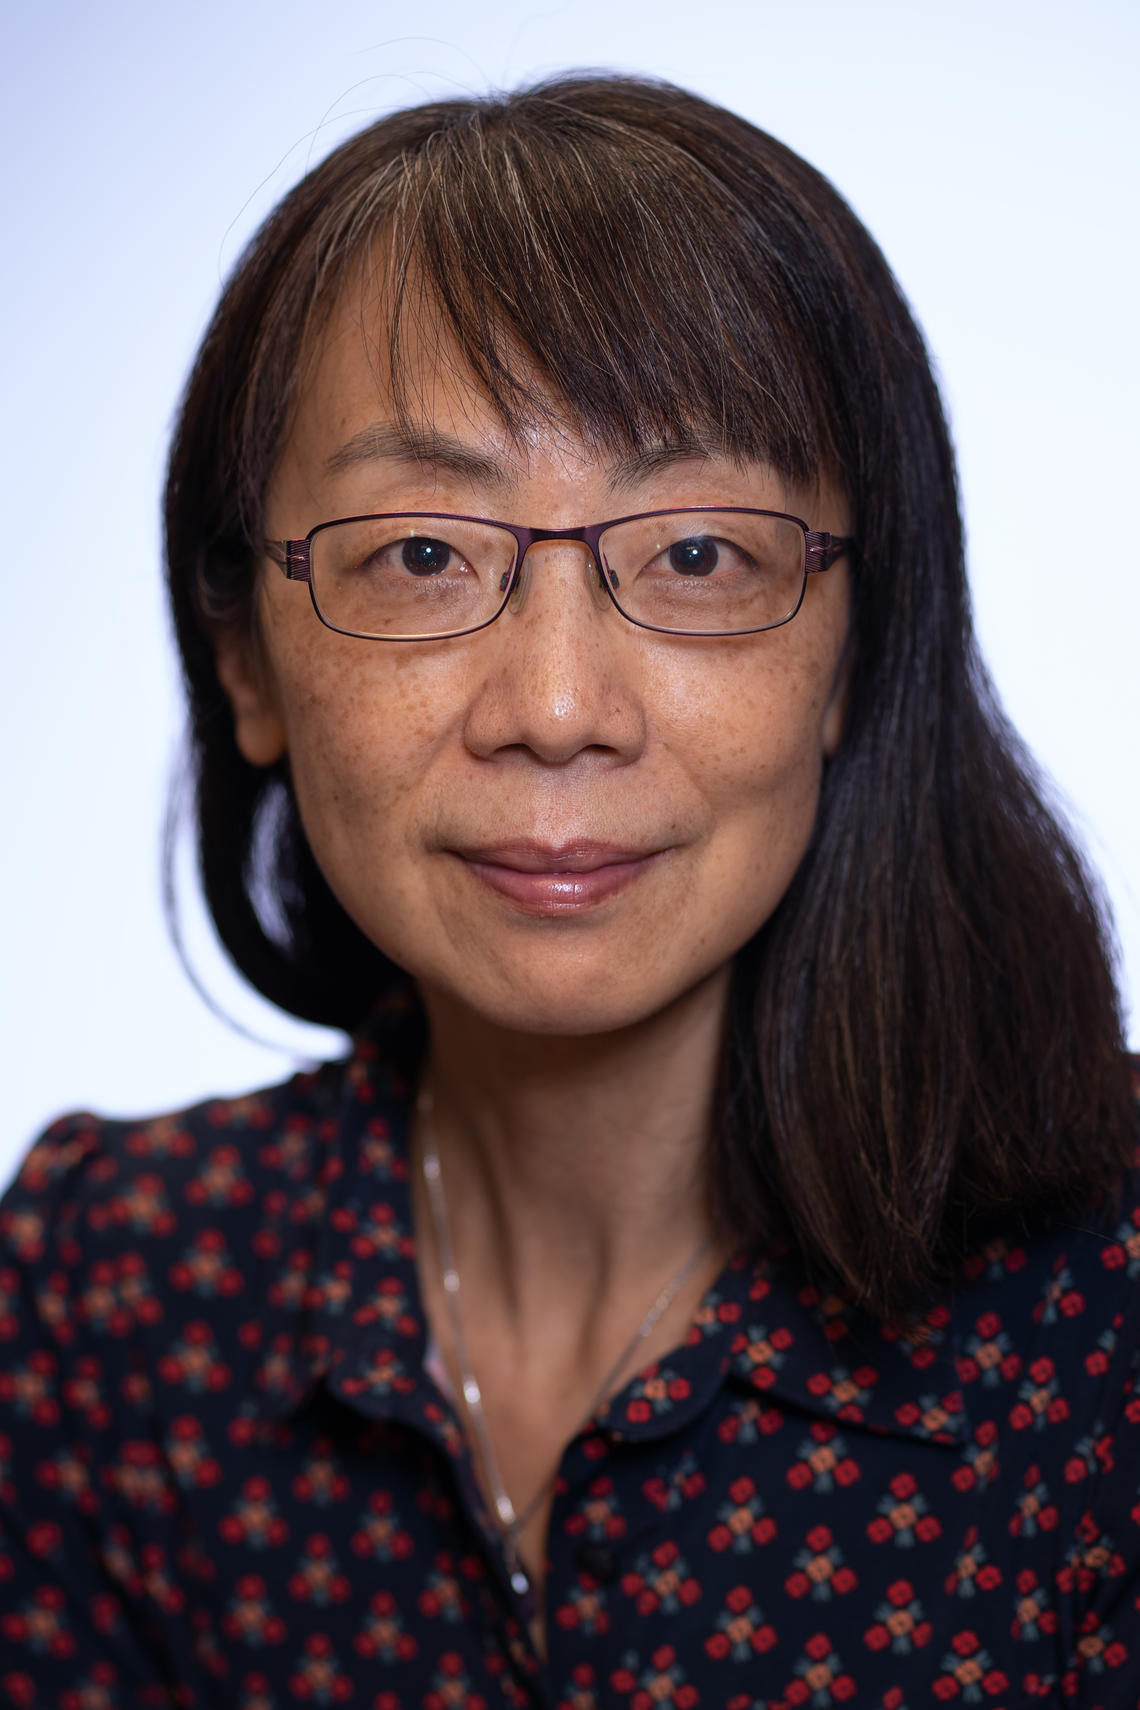 Dr. Mei Zhen